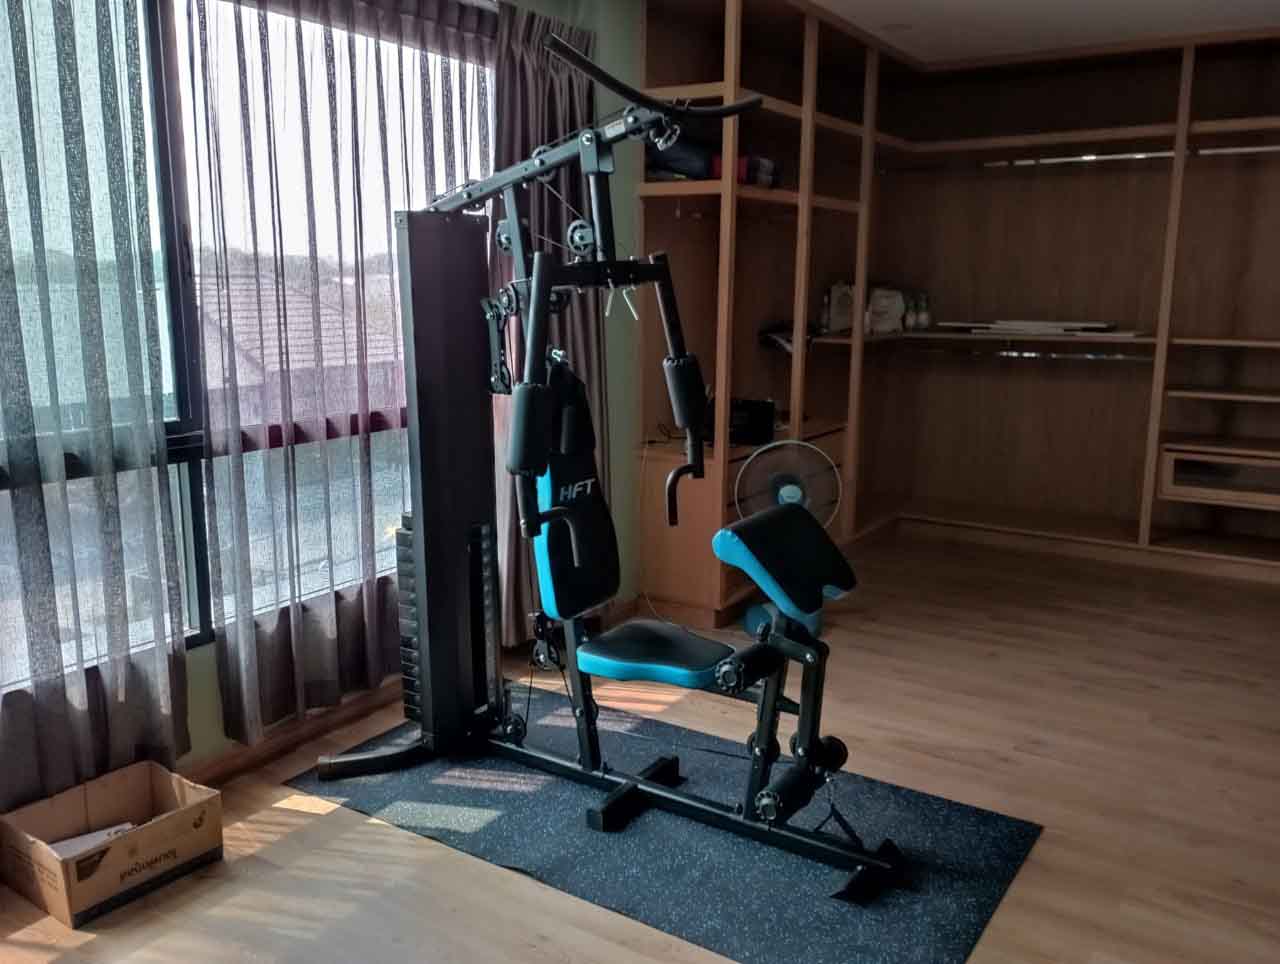 รีวิวชุดโฮมยิม Home gym รุ่น KH2 ส่งตรง บริการถึงบ้านคุณลูกค้า